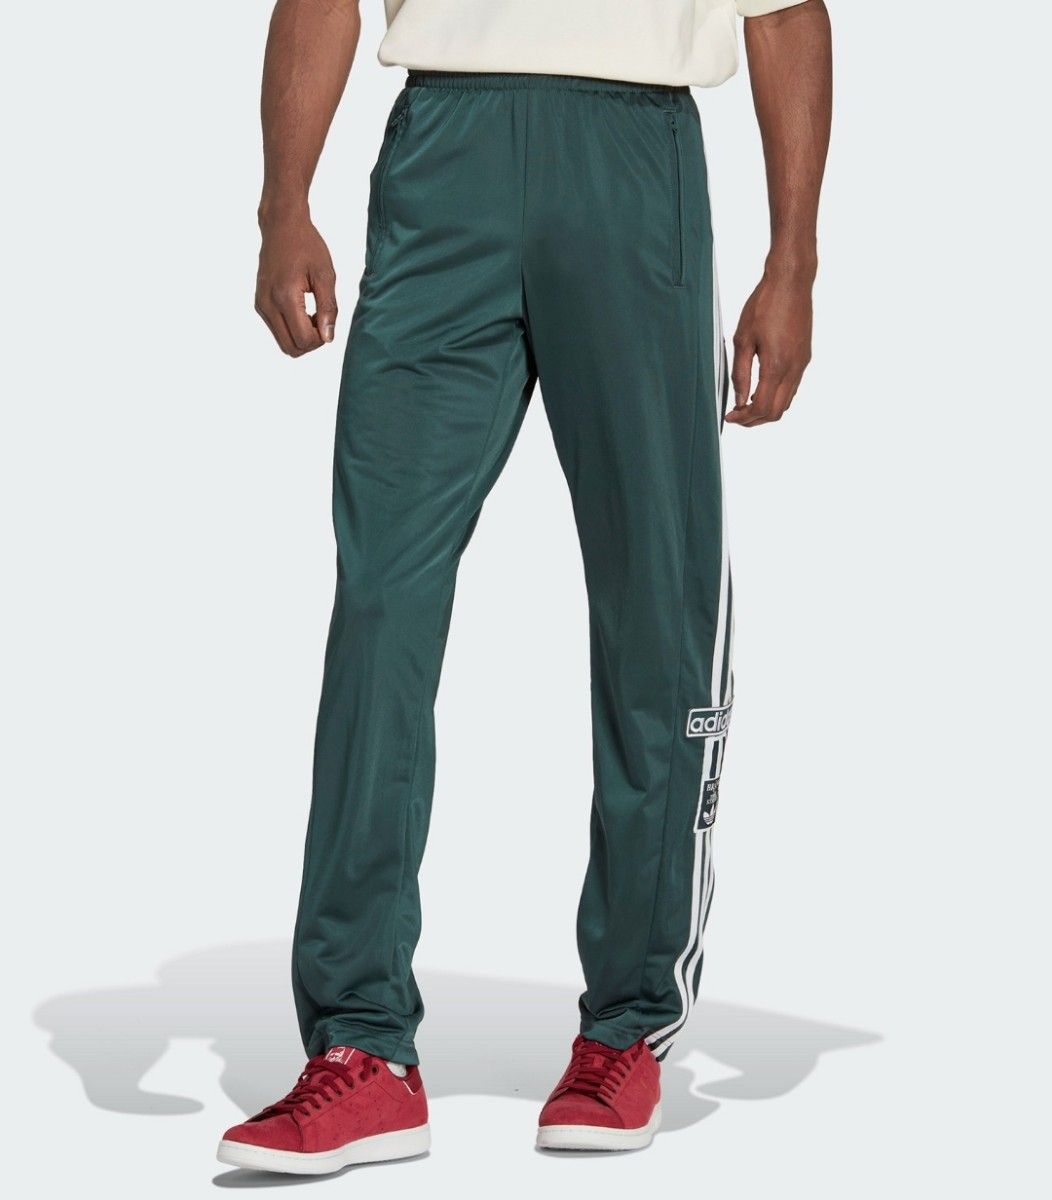 アディダス 緑 クラシックス アディブレイク スナップパンツ ジャージ 男性XS 人気デザイン adidas ユニセックス